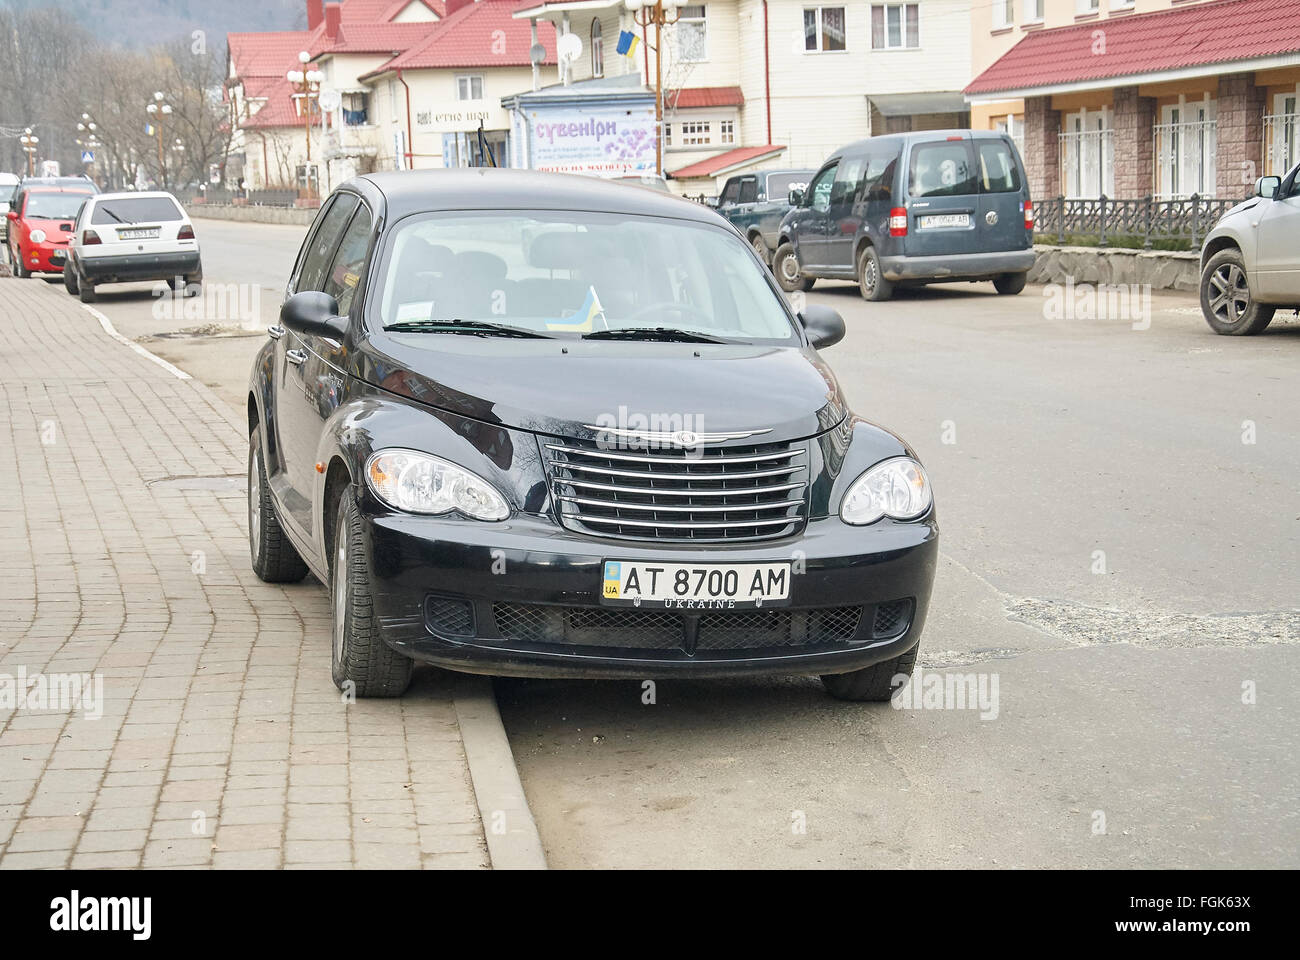 YAREMCHE, UKRAINE - JANUARY 16, 2016: Black Chrysler PT Cruiser at the rural street. Stock Photo